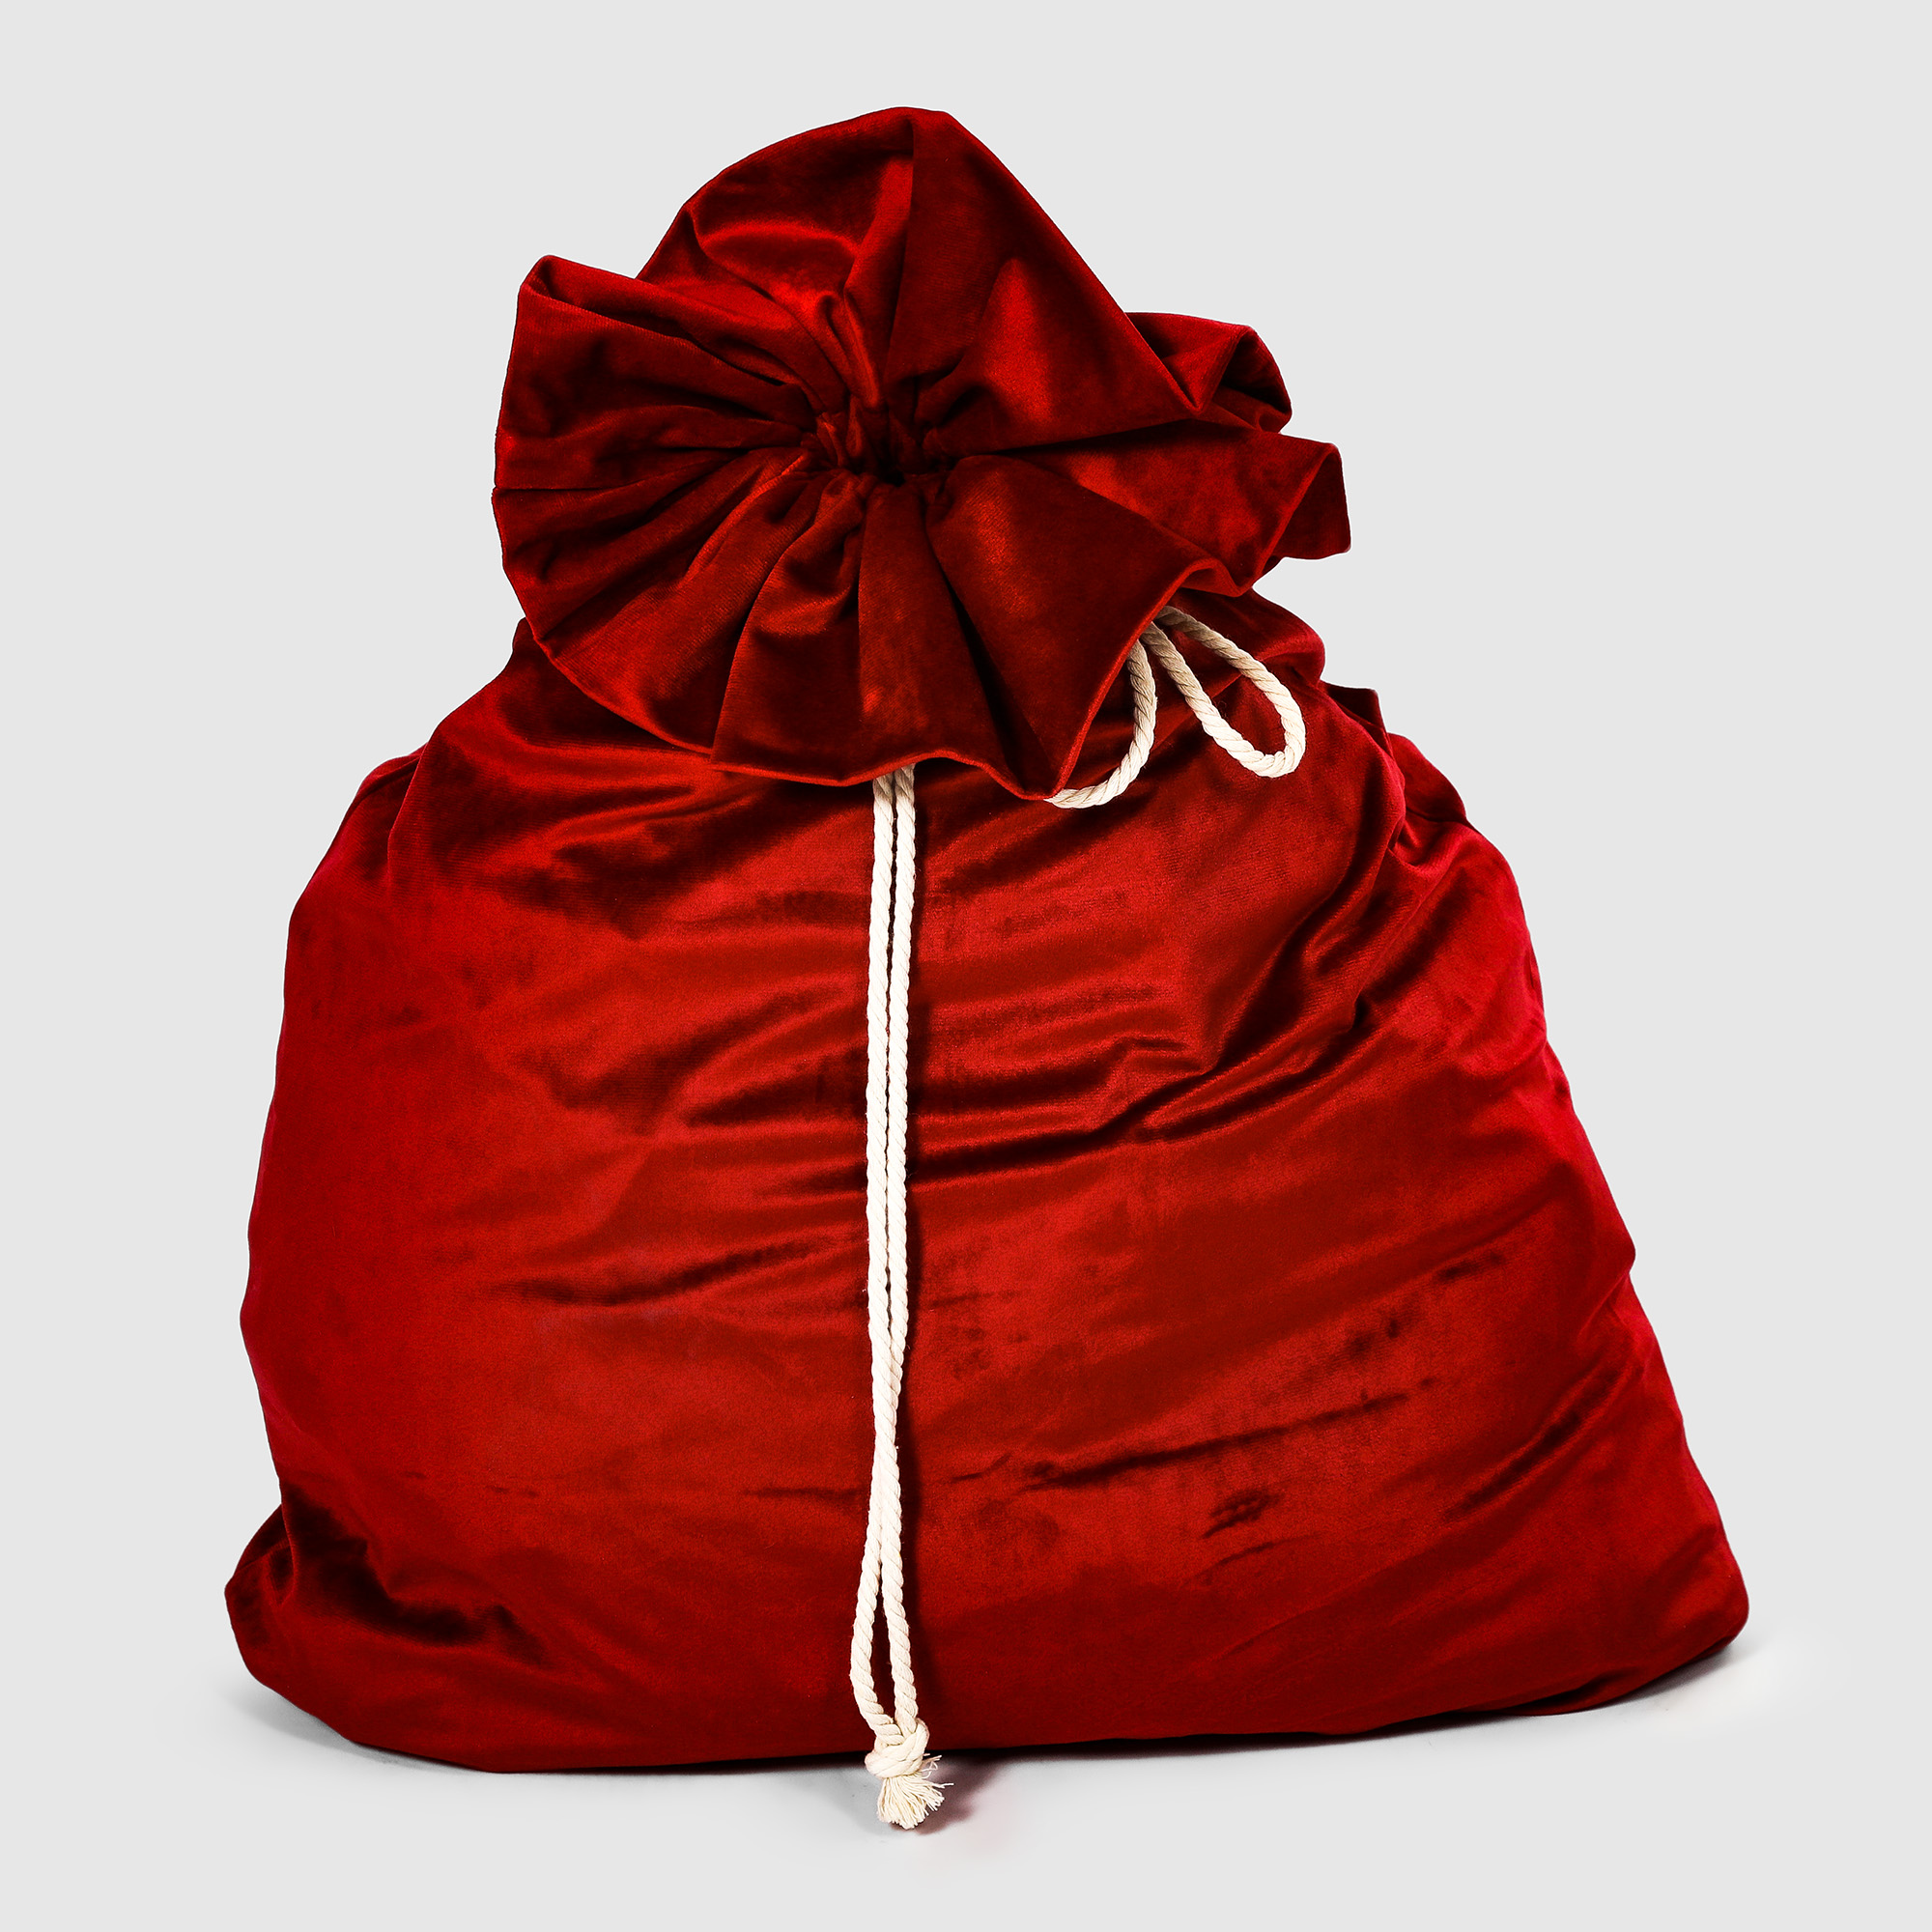 Мешок для подарков Bizzotto ny красный 60x100 см vash gold мешок для муусора 120 литров красный с завязкой 30 мкм 100